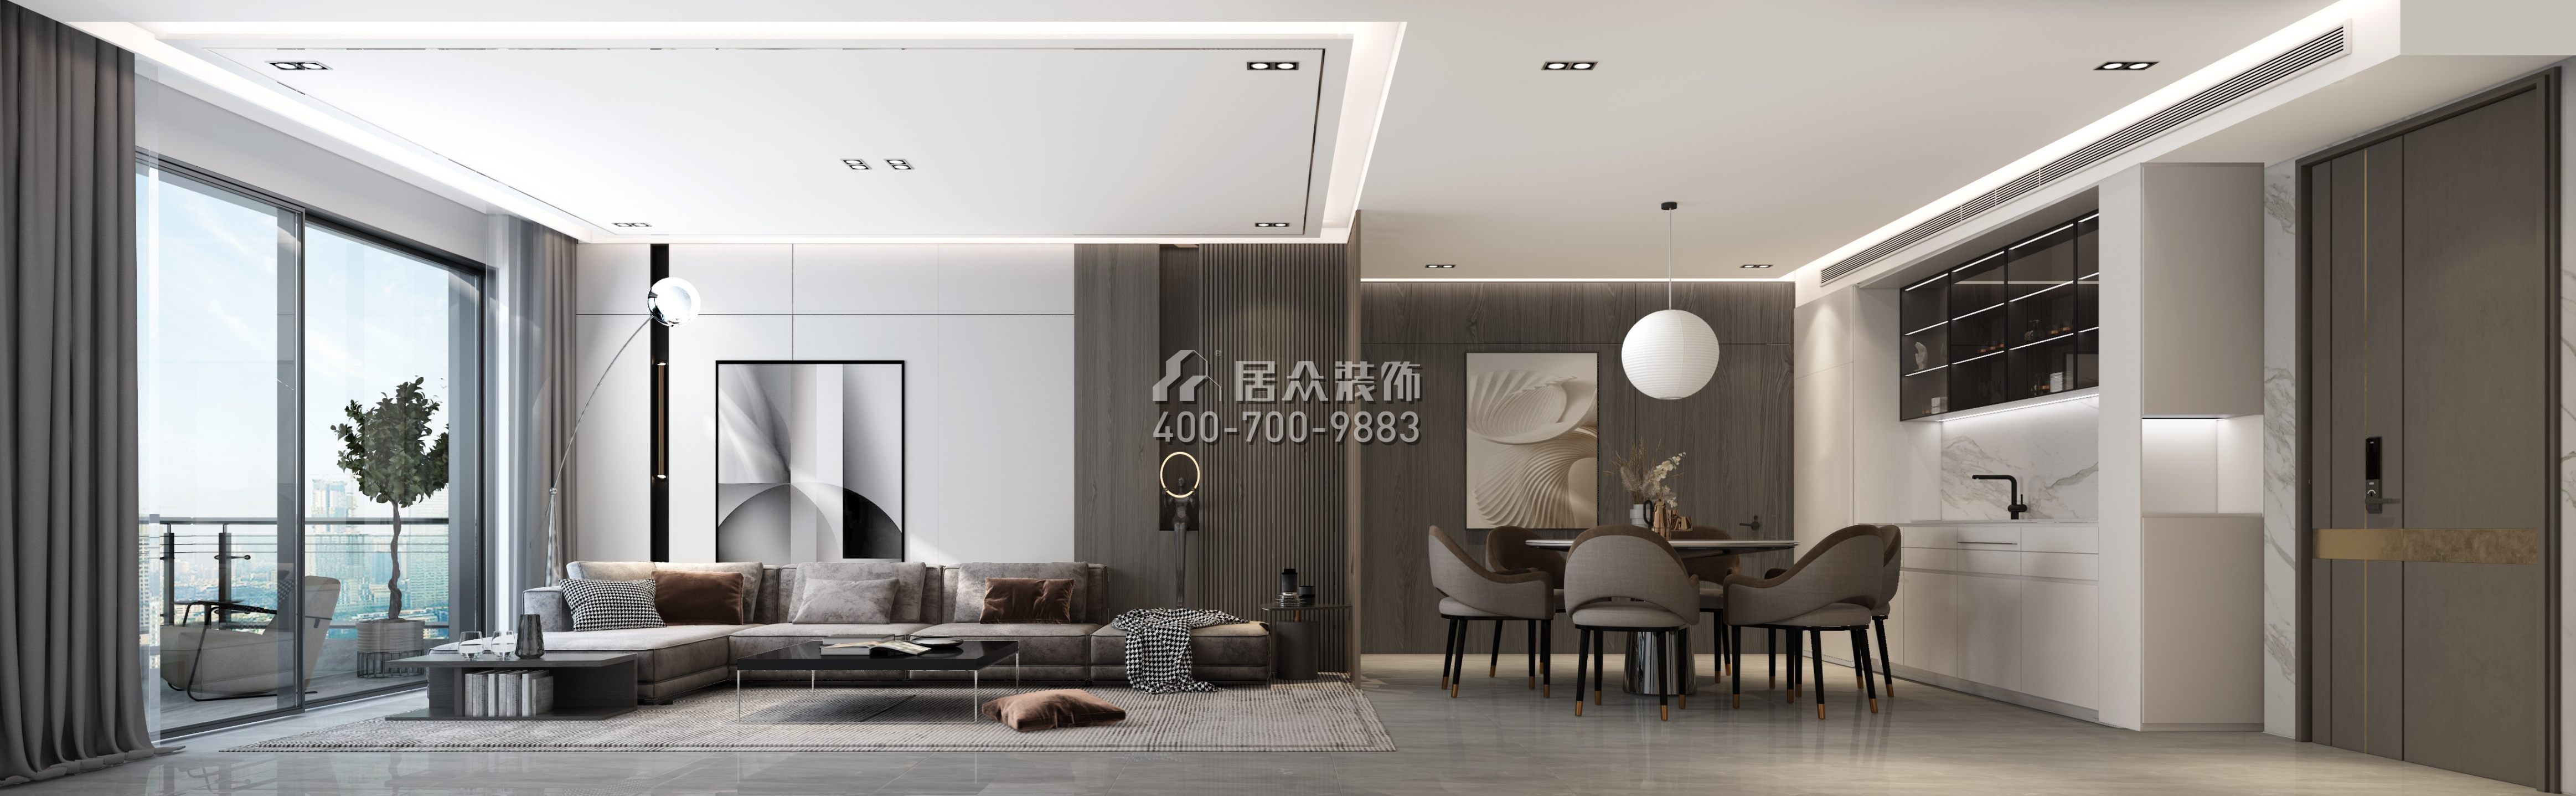 现代装修案例_天津华侨城万科翡翠嘉和三居室125平米装修效果图